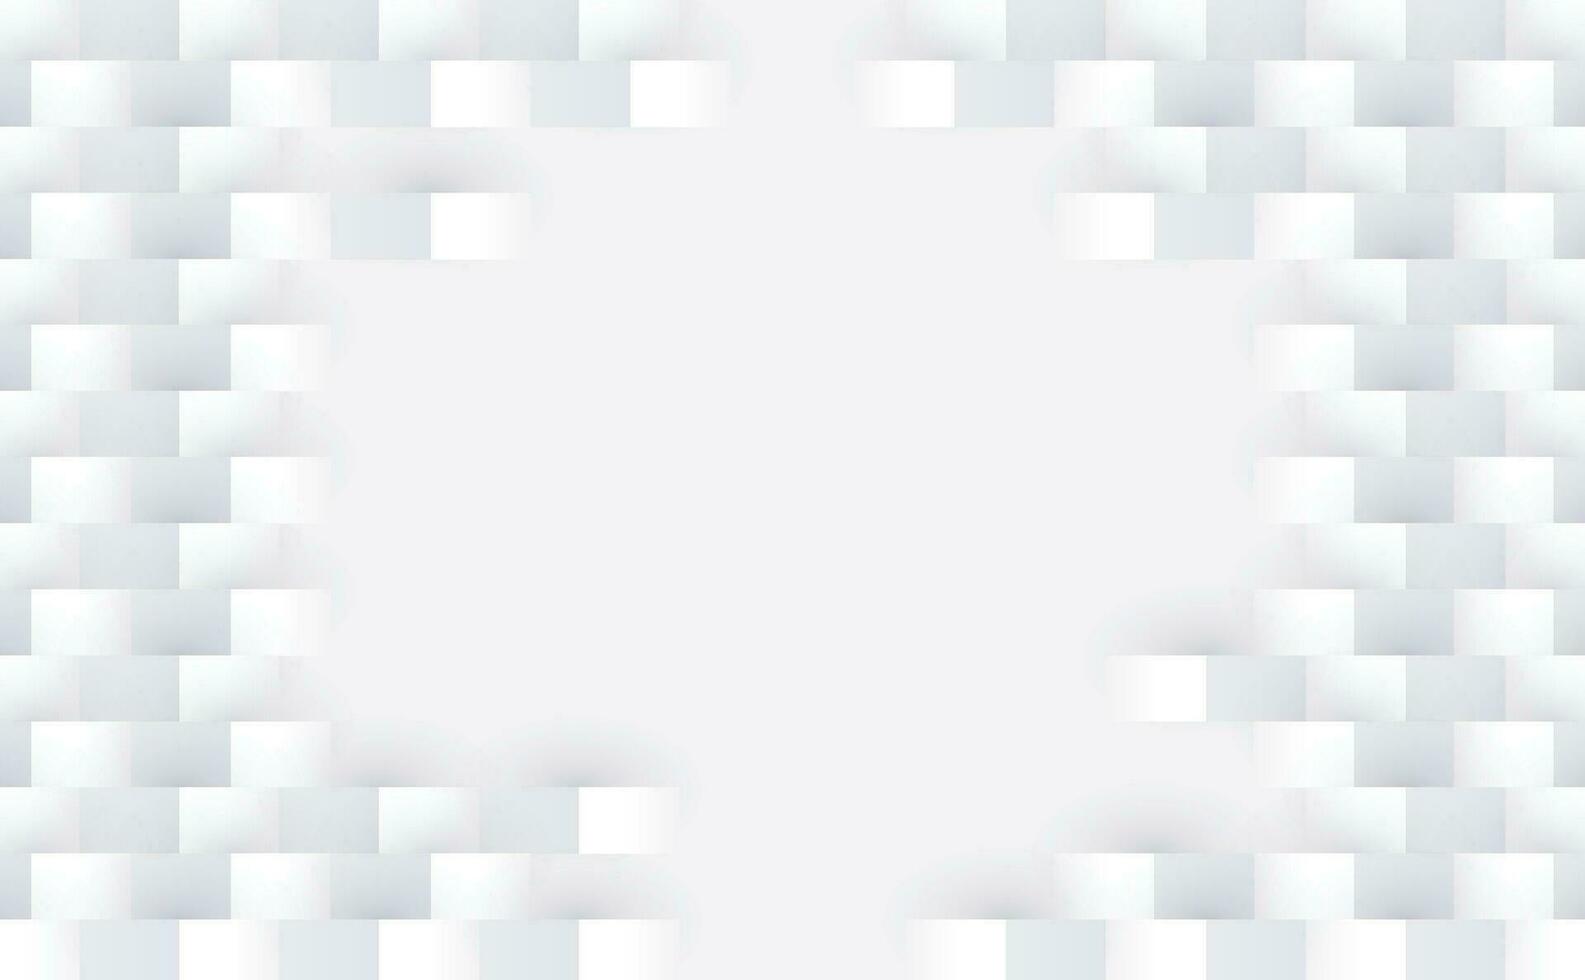 fundo quadrado moderno 3d abstrato. textura padrão geométrico branco e cinza. ilustração da arte vetorial vetor